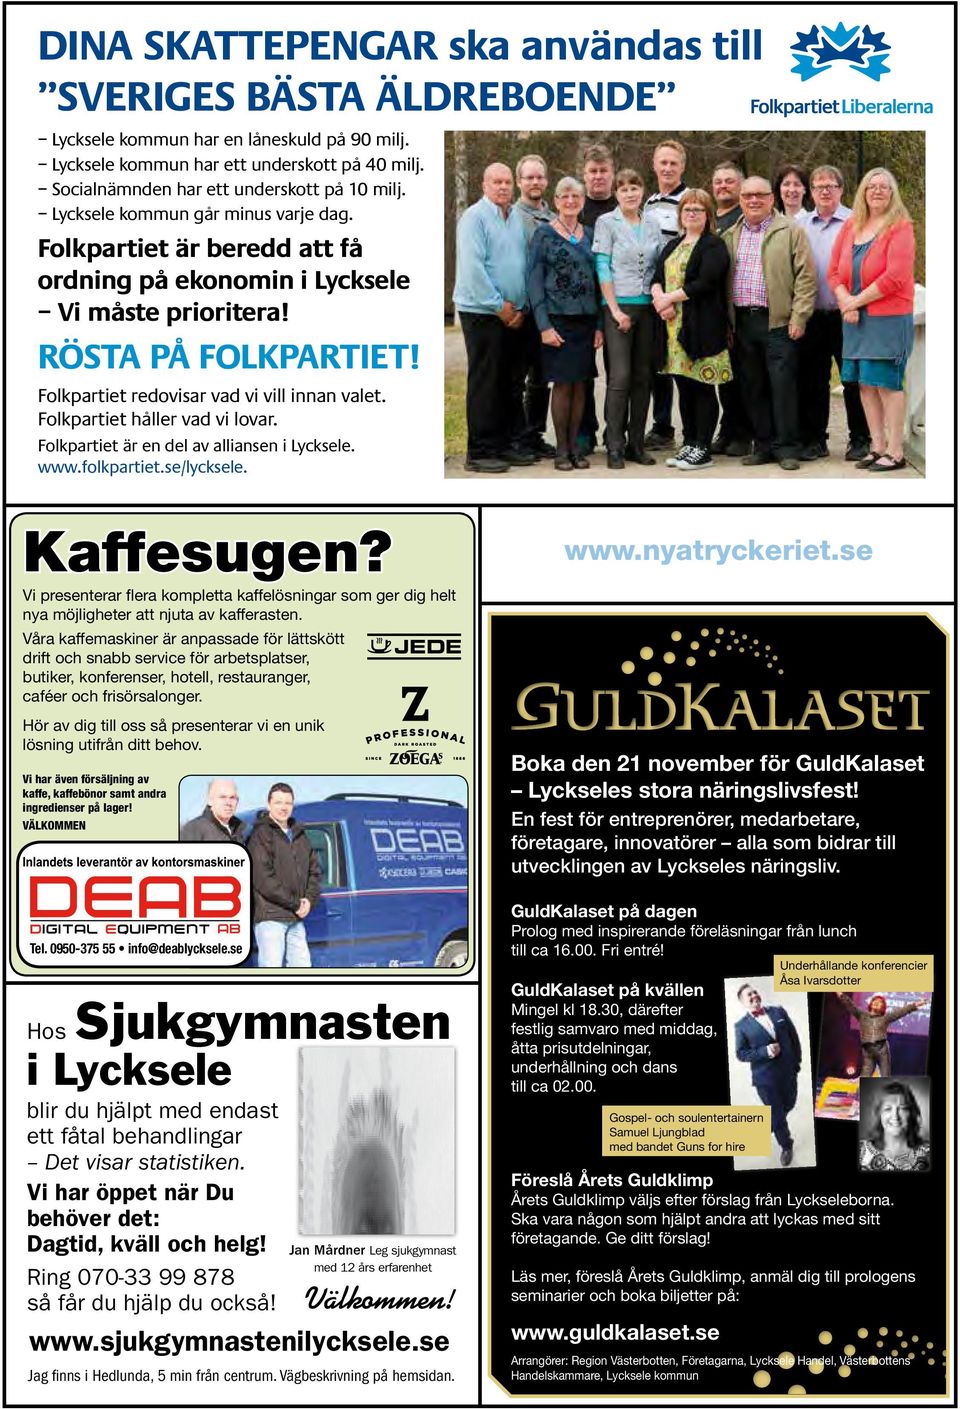 Folkpartiet håller vad vi lovar. Folkpartiet är en del av alliansen i Lycksele. www.folkpartiet.se/lycksele. Kaffesugen?